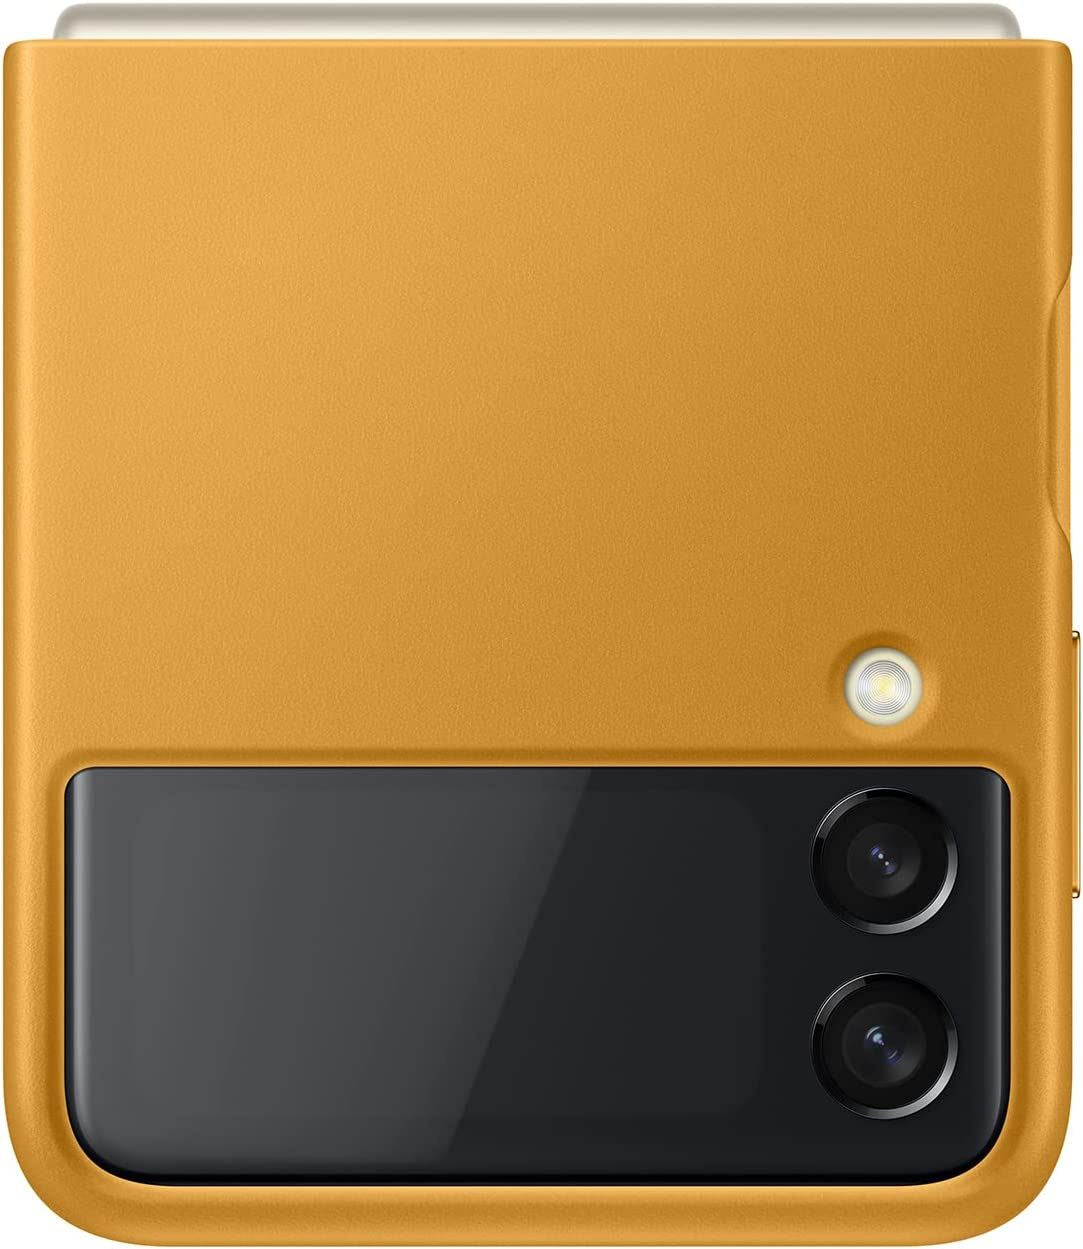 Official Samsung Galaxy Z Flip 3 Leather Cover Mustard - EF-VF711LYEGWW